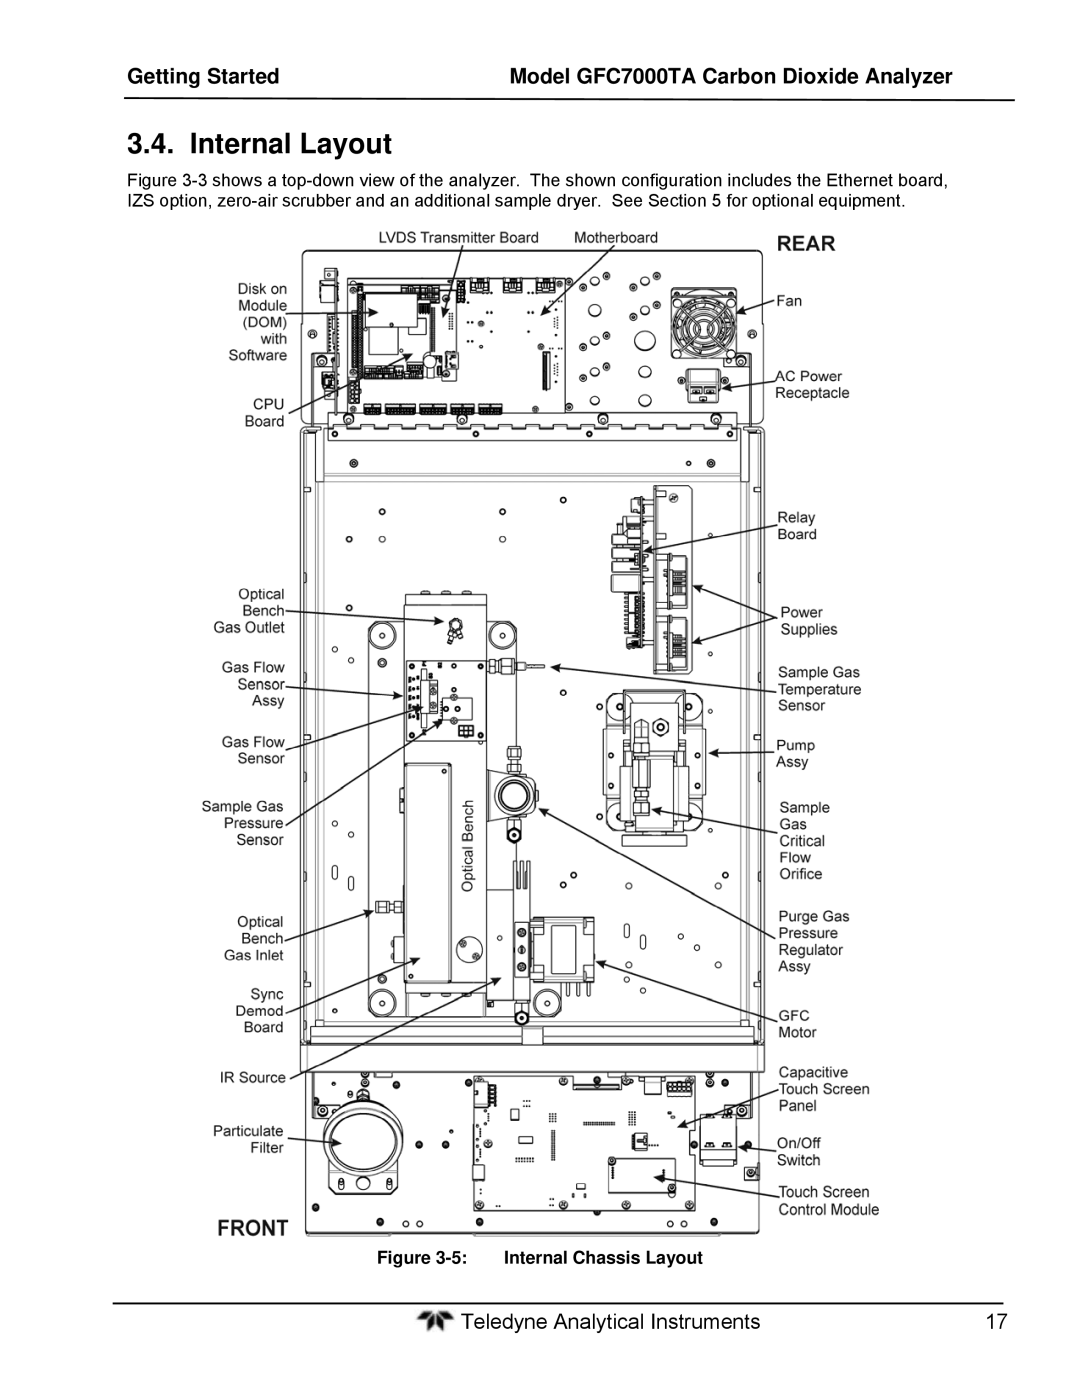 Teledyne gfc 7000ta operation manual Internal Layout, Internal Chassis Layout 